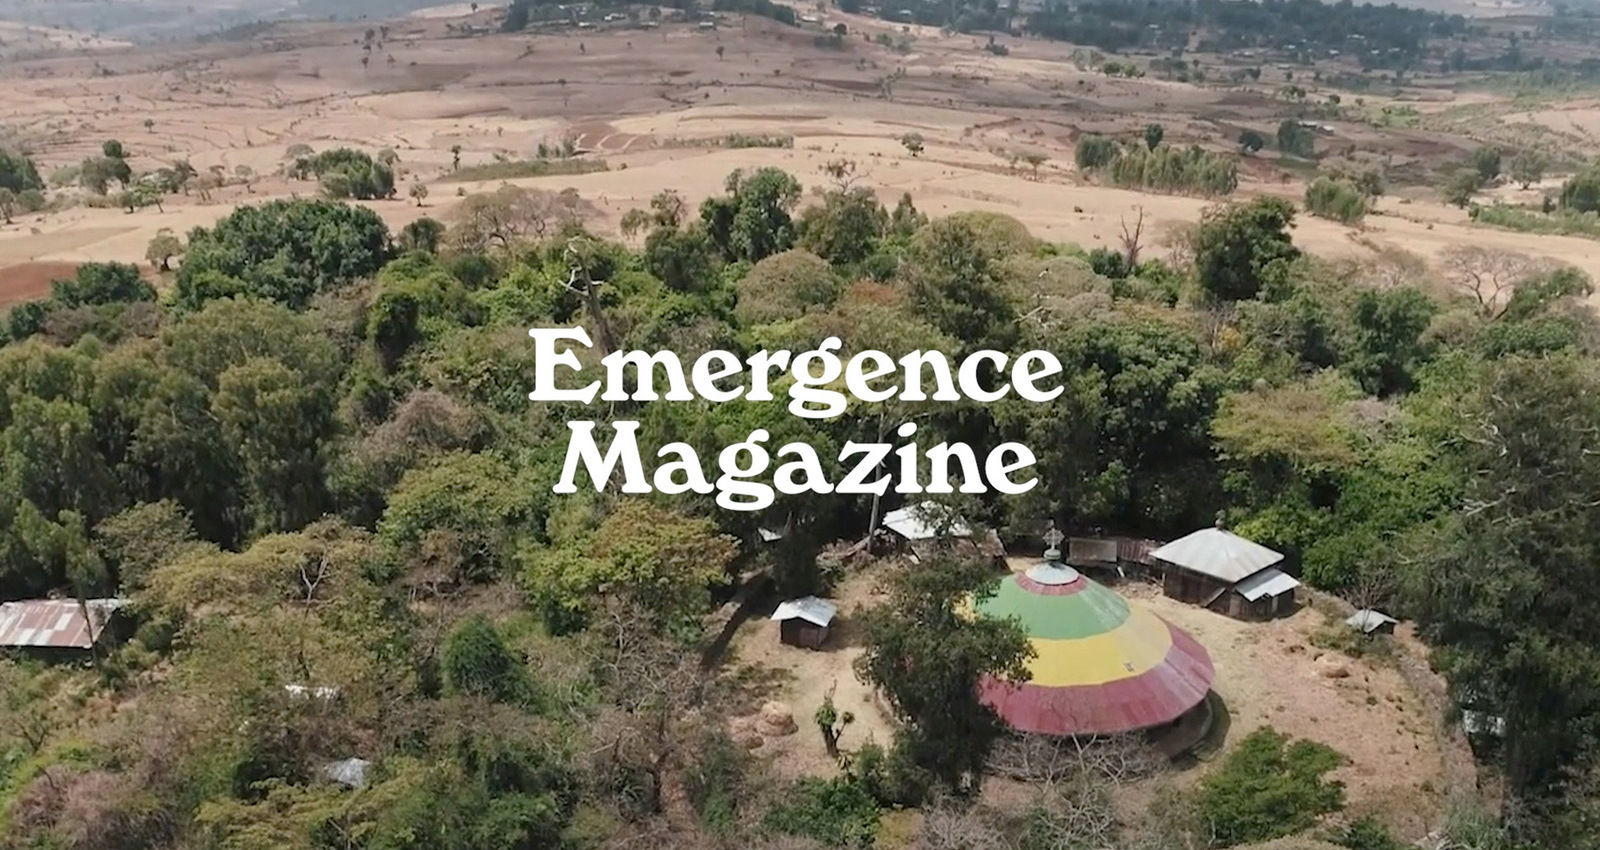 Emergence Magazine